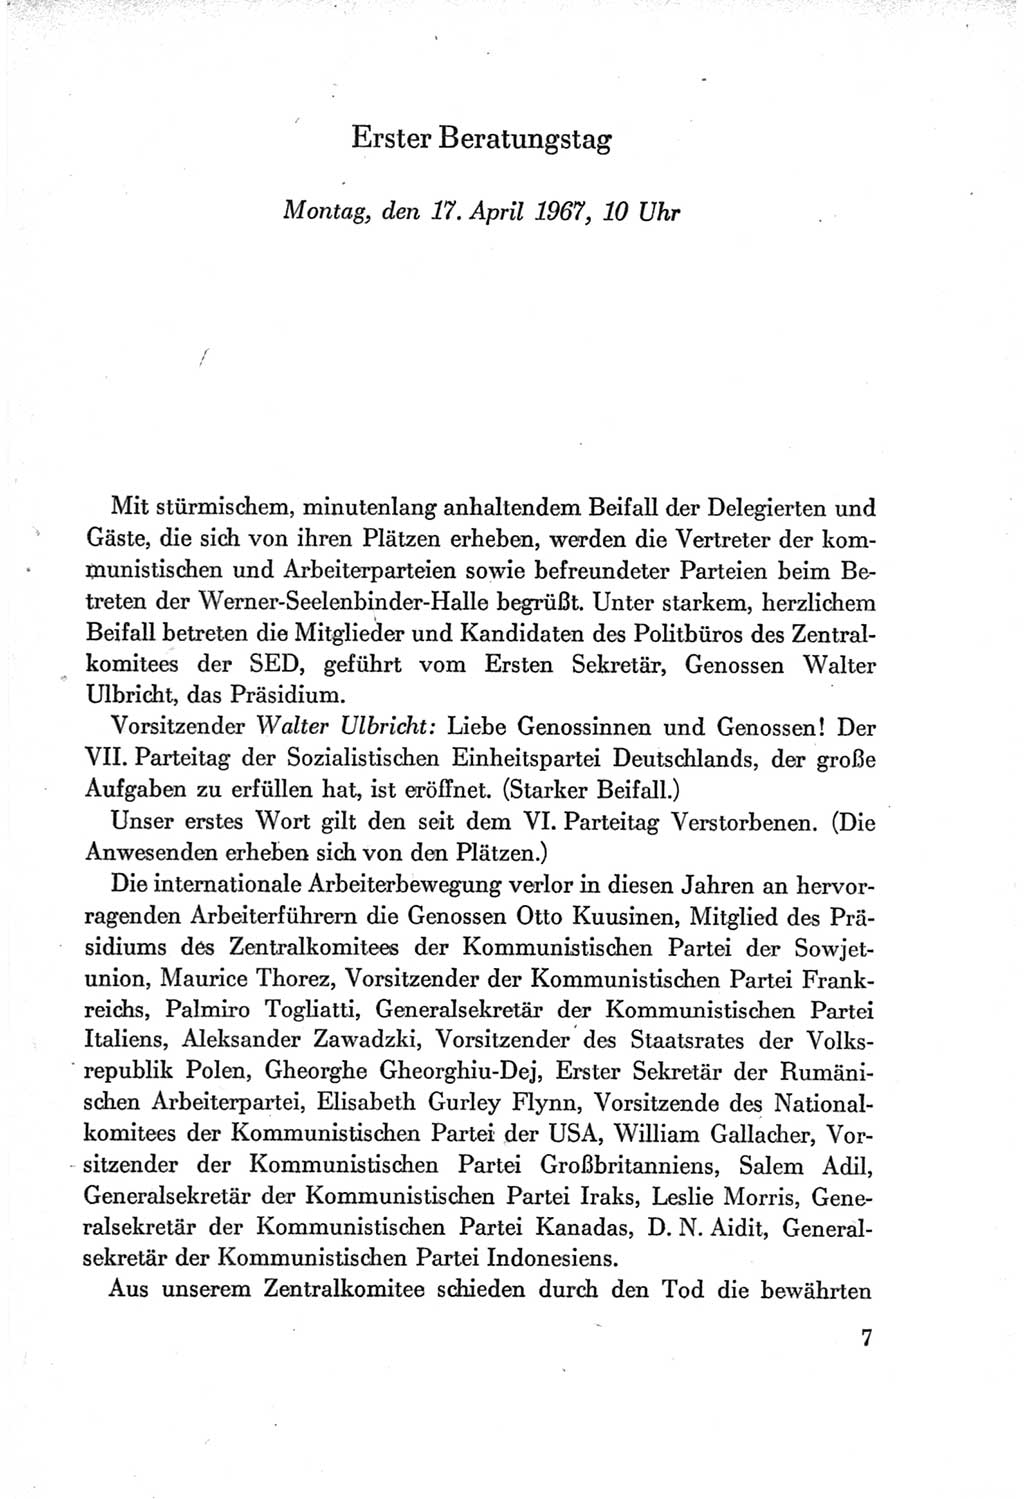 Protokoll der Verhandlungen des Ⅶ. Parteitages der Sozialistischen Einheitspartei Deutschlands (SED) [Deutsche Demokratische Republik (DDR)] 1967, Band Ⅰ, Seite 7 (Prot. Verh. Ⅶ. PT SED DDR 1967, Bd. Ⅰ, S. 7)